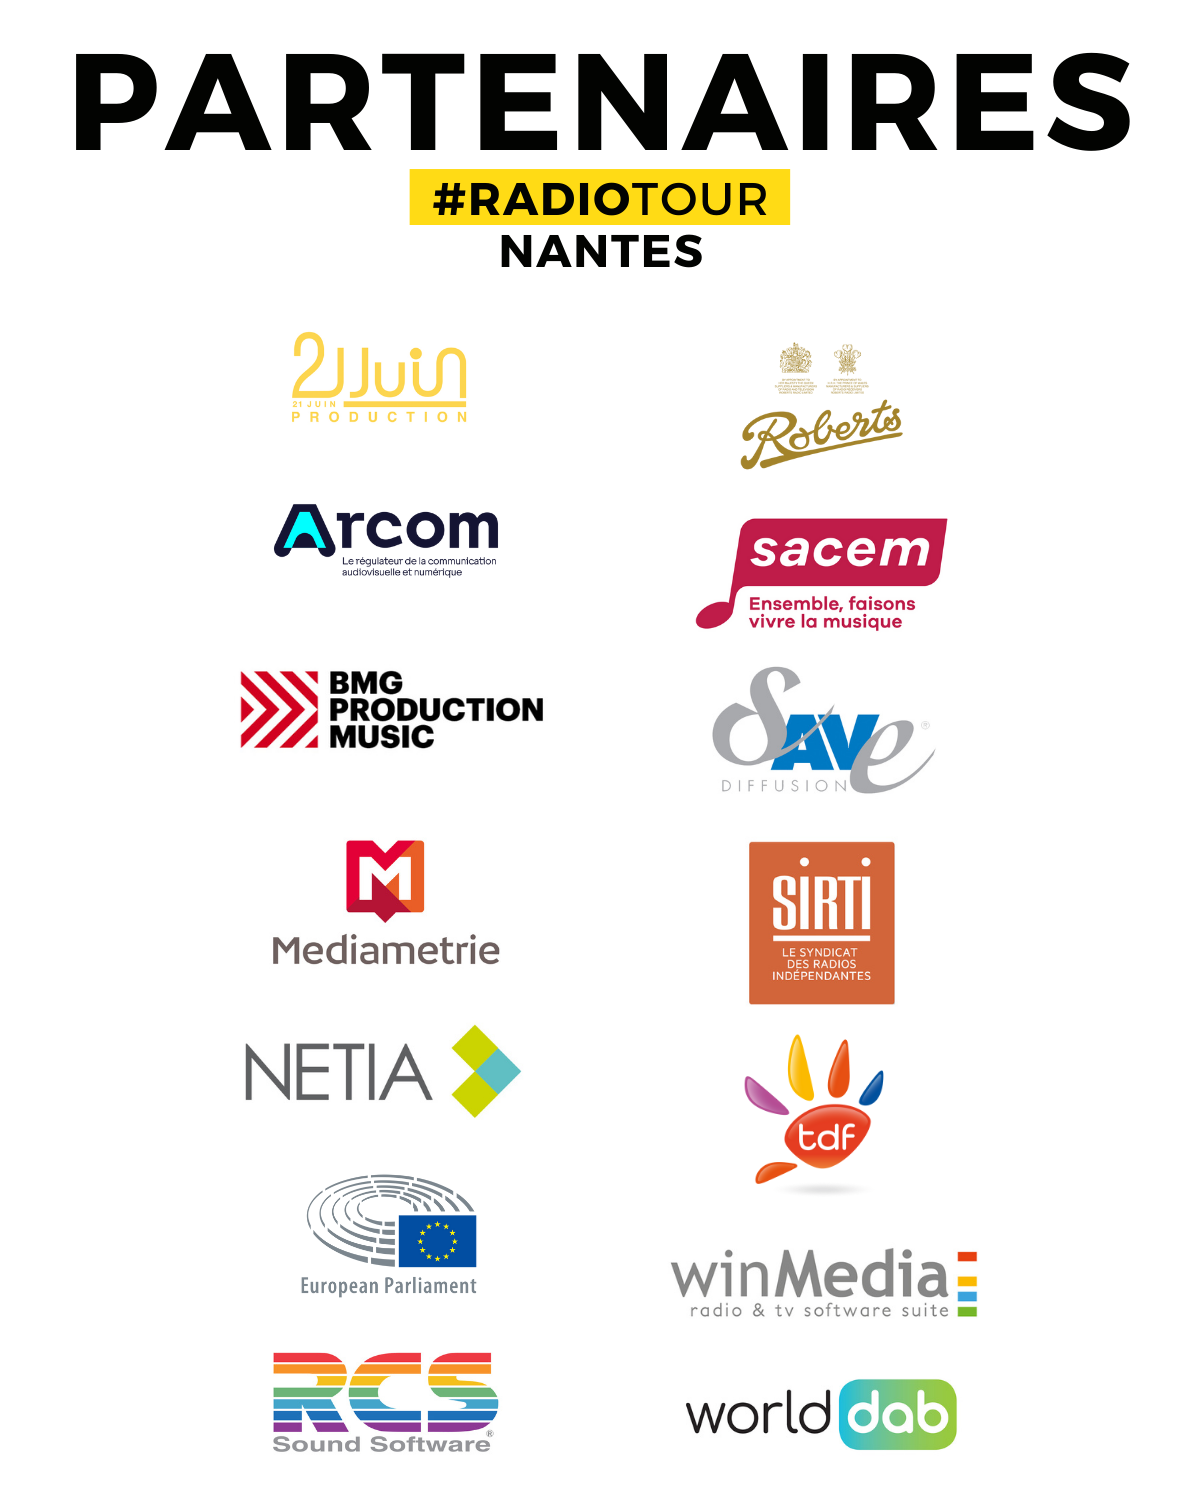 RadioTour à Nantes : les intervenants confirmés